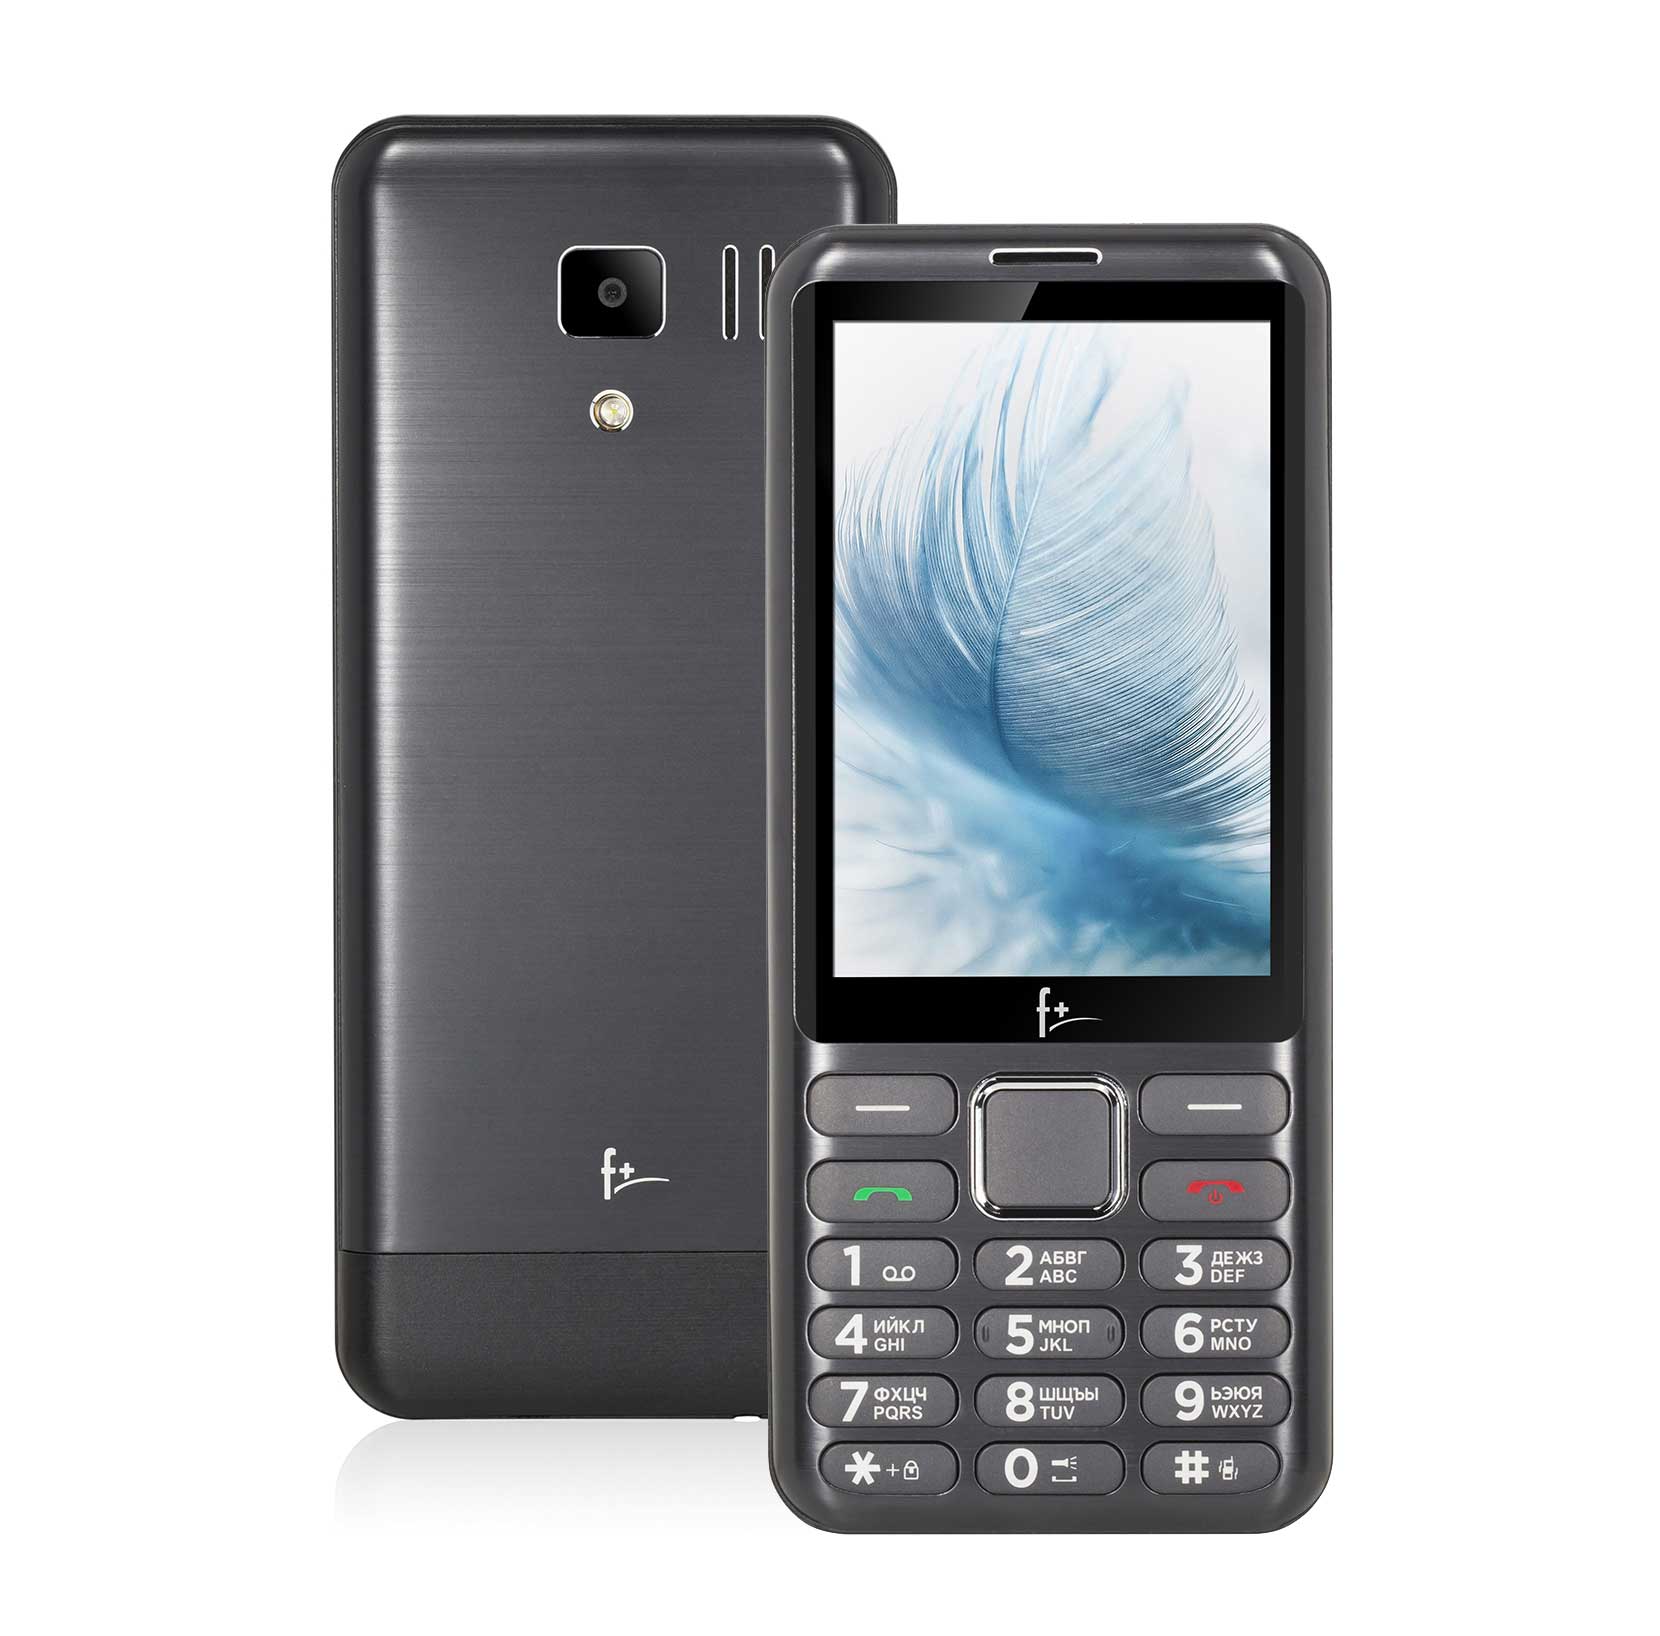 Мобильный телефон F+ S350 Dark Grey телефон f b241 dark grey